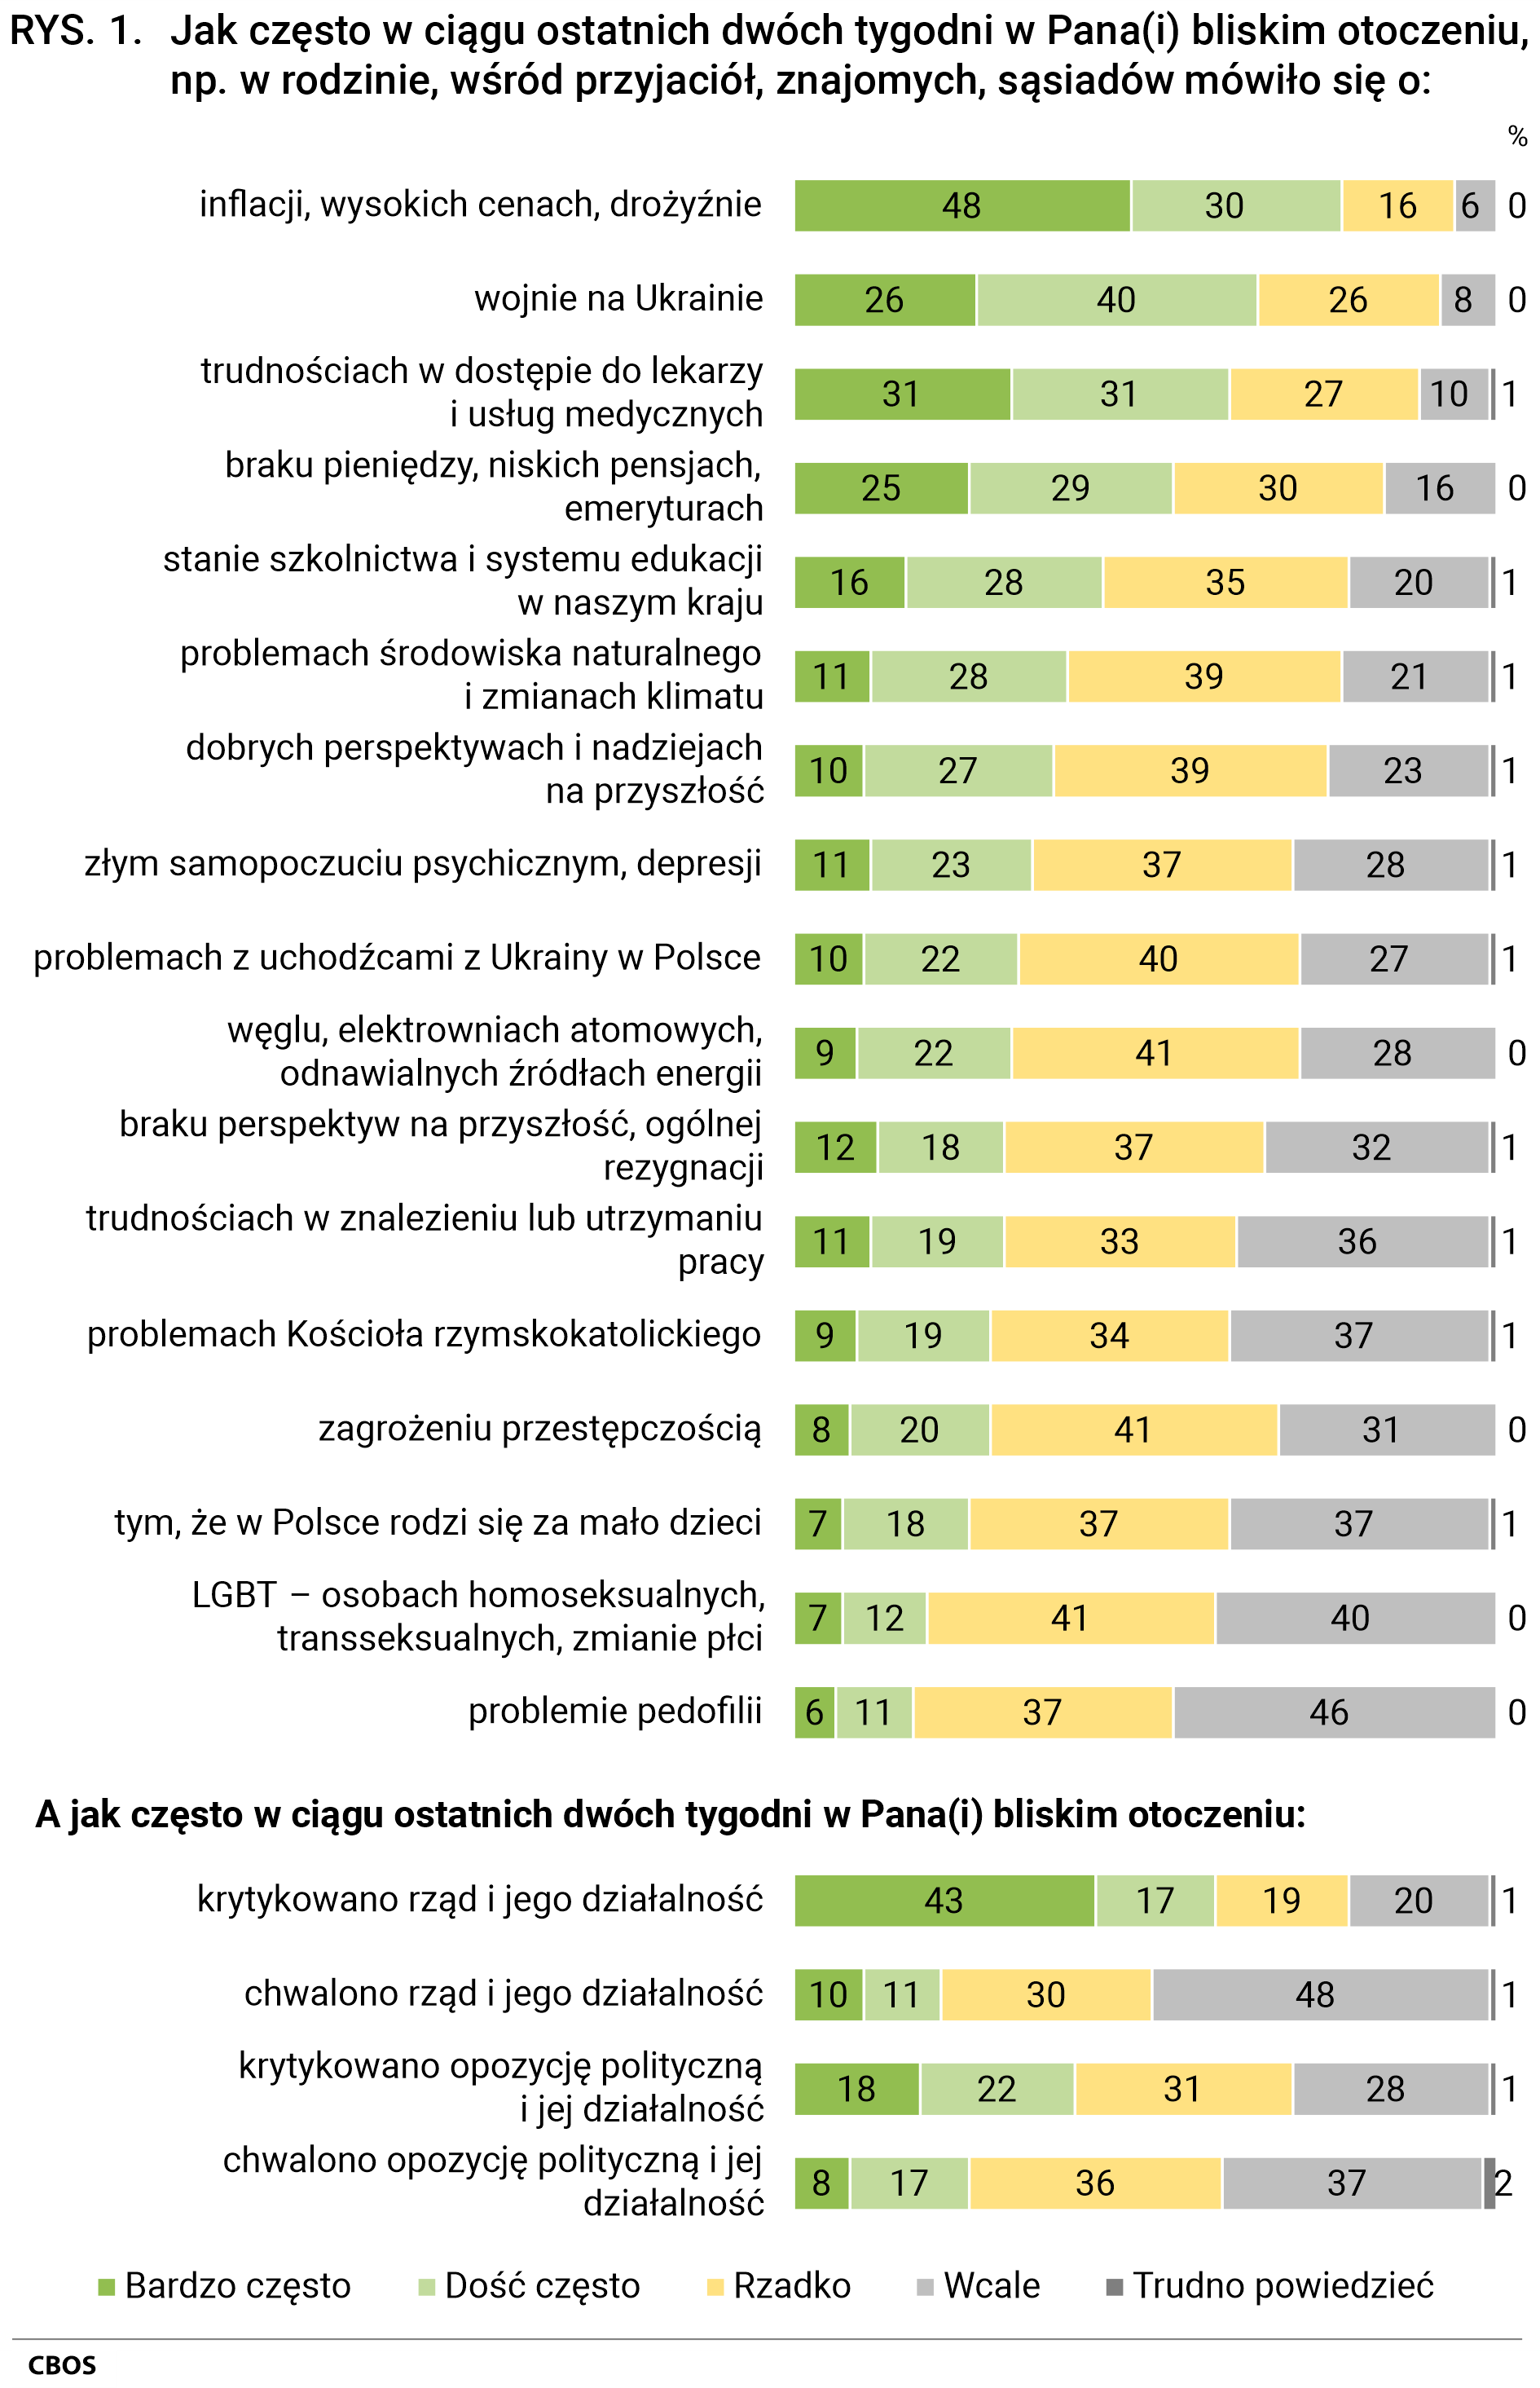 Rysunek 1 Jak często w ciągu ostatnich dwóch tygodni w Pana(Pani) bliskim otoczeniu, np. w rodzinie, wśród przyjaciół, znajomych, sąsiadów mówiło się o: inflacji, wysokich cenach, drożyźnie - bardzo często (48%), dość często (30%), rzadko (16%), wcale (6%), trudno powiedzieć (0%); wojnie na Ukrainie - bardzo często (26%), dość często (40%), rzadko (26%), wcale (8%), trudno powiedzieć (0%); trudnościach w dostępie do lekarzy i usług medycznych - bardzo często (31%), dość często (31%), rzadko (27%), wcale (10%), trudno powiedzieć (1%); braku pieniędzy, niskich pensjach, emeryturach - bardzo często (25%), dość często (29%), rzadko (30%), wcale (16%), trudno powiedzieć (0%); stanie szkolnictwa i systemu edukacji w naszym kraju - bardzo często (16%), dość często (28%), rzadko (35%), wcale (20%), trudno powiedzieć (1%); problemach środowiska naturalnego i zmianach klimatu - bardzo często (11%), dość często (28%), rzadko (39%), wcale (21%), trudno powiedzieć (1%); dobrych perspektywach i nadziejach na przyszłość - bardzo często (10%), dość często (27%), rzadko (39%), wcale (23%), trudno powiedzieć (1%); złym samopoczuciu psychicznym, depresji - bardzo często (11%), dość często (23%), rzadko (37%), wcale (28%), trudno powiedzieć (1%); problemach z uchodźcami z Ukrainy w Polsce - bardzo często (10%), dość często (22%), rzadko (40%), wcale (27%), trudno powiedzieć (1%); węglu, elektrowniach atomowych, odnawialnych źródłach energii - bardzo często (9%), dość często (22%), rzadko (41%), wcale (28%), trudno powiedzieć (0%); braku perspektyw na przyszłość, ogólnej rezygnacji - bardzo często (12%), dość często (18%), rzadko (37%), wcale (32%), trudno powiedzieć (1%); trudnościach w znalezieniu lub utrzymaniu pracy - bardzo często (11%), dość często (19%), rzadko (33%),  wcale (36%), trudno powiedzieć (1%); problemach Kościoła rzymskokatolickiego - bardzo często (9%), dość często (19%), rzadko (34%), wcale (37%), trudno powiedzieć (1%); zagrożeniu przestępczością - bardzo często (8%), dość często (20%), rzadko (41%), wcale (31%), trudno powiedzieć (0%); tym, że w Polsce rodzi się za mało dzieci - bardzo często (7%), dość często (18%), rzadko (37%), wcale (37%), trudno powiedzieć (1%); LGBT – osobach homoseksualnych, transseksualnych, zmianie płci - bardzo często (7%), dość często (12%), rzadko (41%), wcale (40%), trudno powiedzieć (0%); problemie pedofilii - bardzo często (6%), dość często (11%), rzadko (37%), wcale (46%), trudno powiedzieć (0%). A jak często w ciągu ostatnich dwóch tygodni w Pana(Pani) bliskim otoczeniu: krytykowano rząd i jego działalność - bardzo często (43%), dość często (17%), rzadko (19%), wcale (20%), trudno powiedzieć (1%); chwalono rząd i jego działalność - bardzo często (10%), dość często (11%), rzadko (30%), wcale (48%), trudno powiedzieć (1%); krytykowano opozycję polityczną i jej działalność - bardzo często (18%), dość często (22%), rzadko (31%), wcale (28%), trudno powiedzieć (1%); chwalono opozycję polityczną i jej działalność - bardzo często (8%), dość często (17%), rzadko (36%), wcale (37%), trudno powiedzieć (2%).